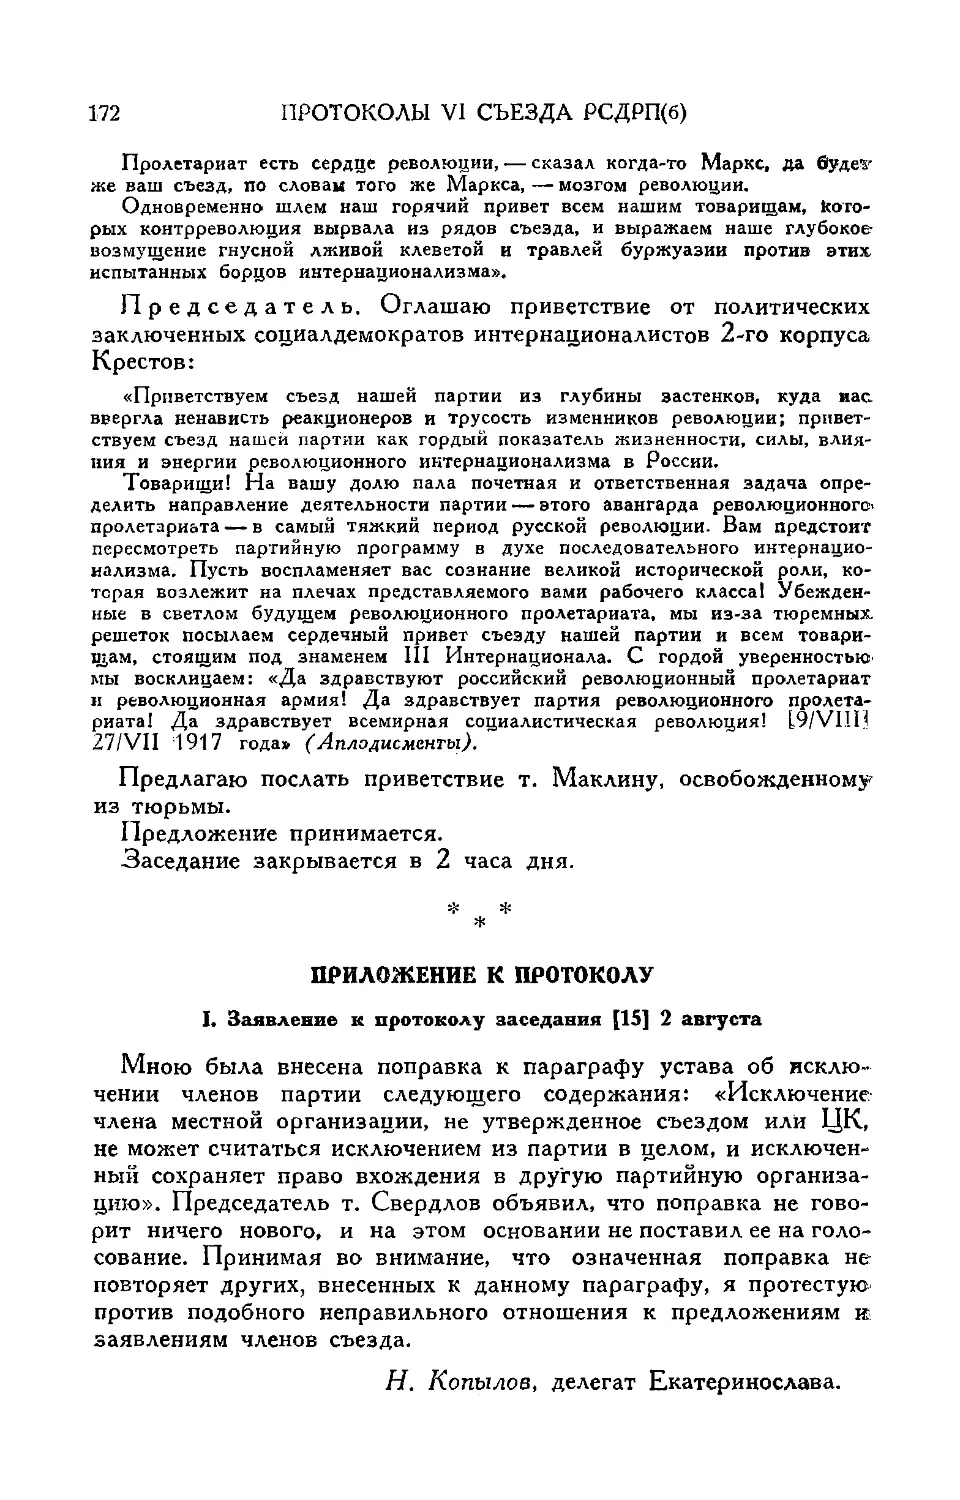 Приложение к протоколу
Заявление т. Н. Копылова